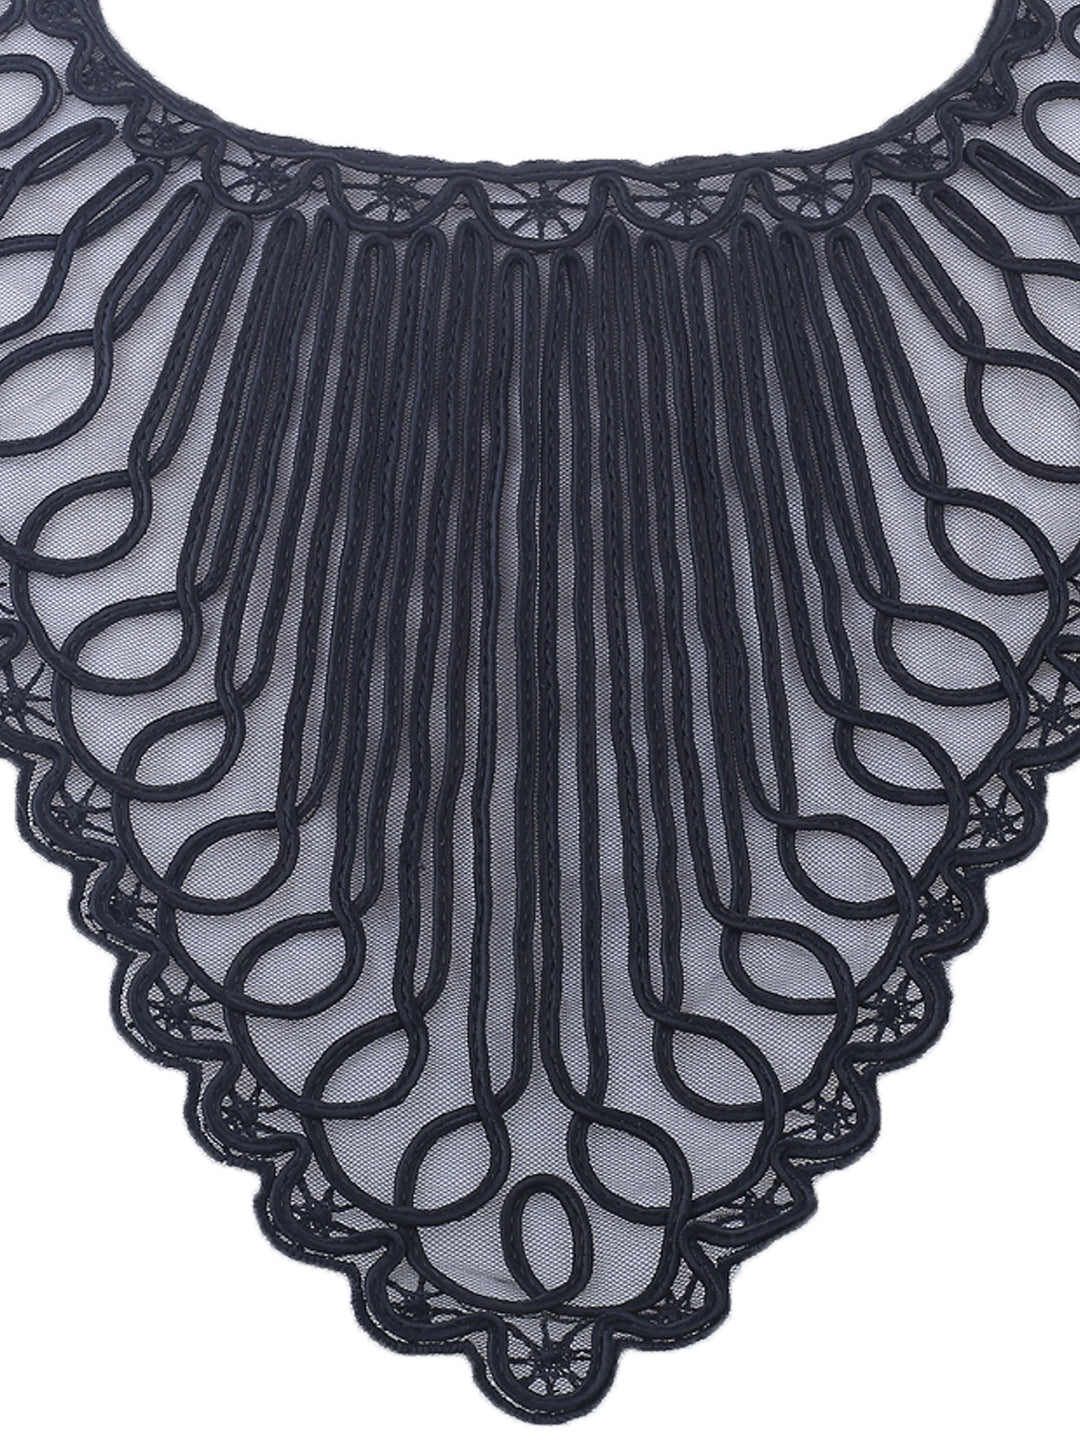 Ribbon Embroidered 'V' Shape Black Sewing Neck Applique